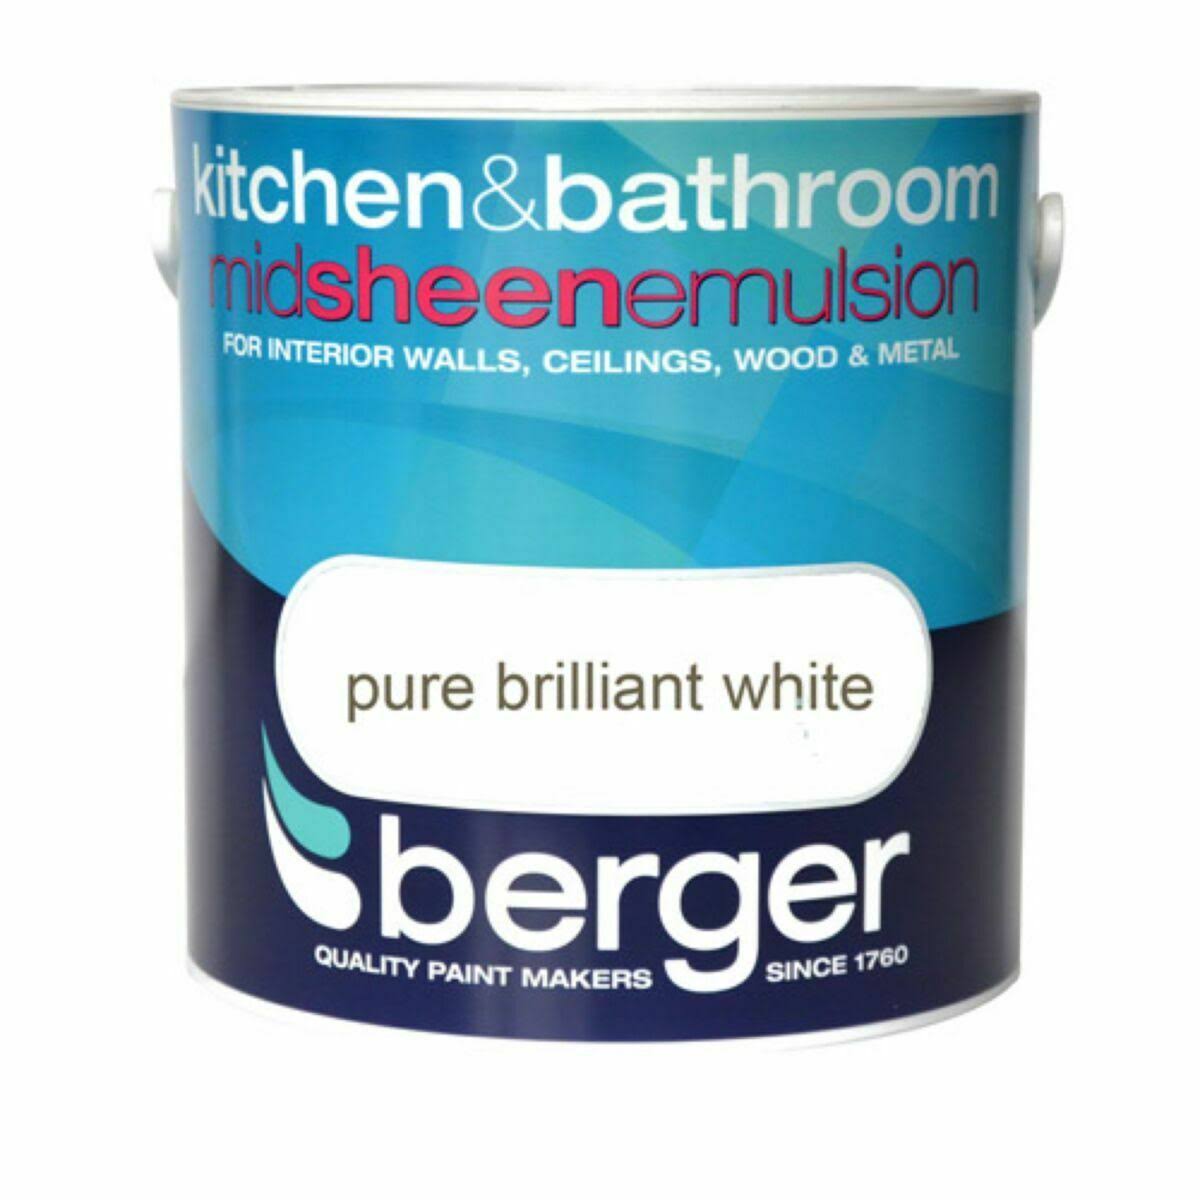 Berger Kitchen & Bathroom Pure Brilliant White 2.5L